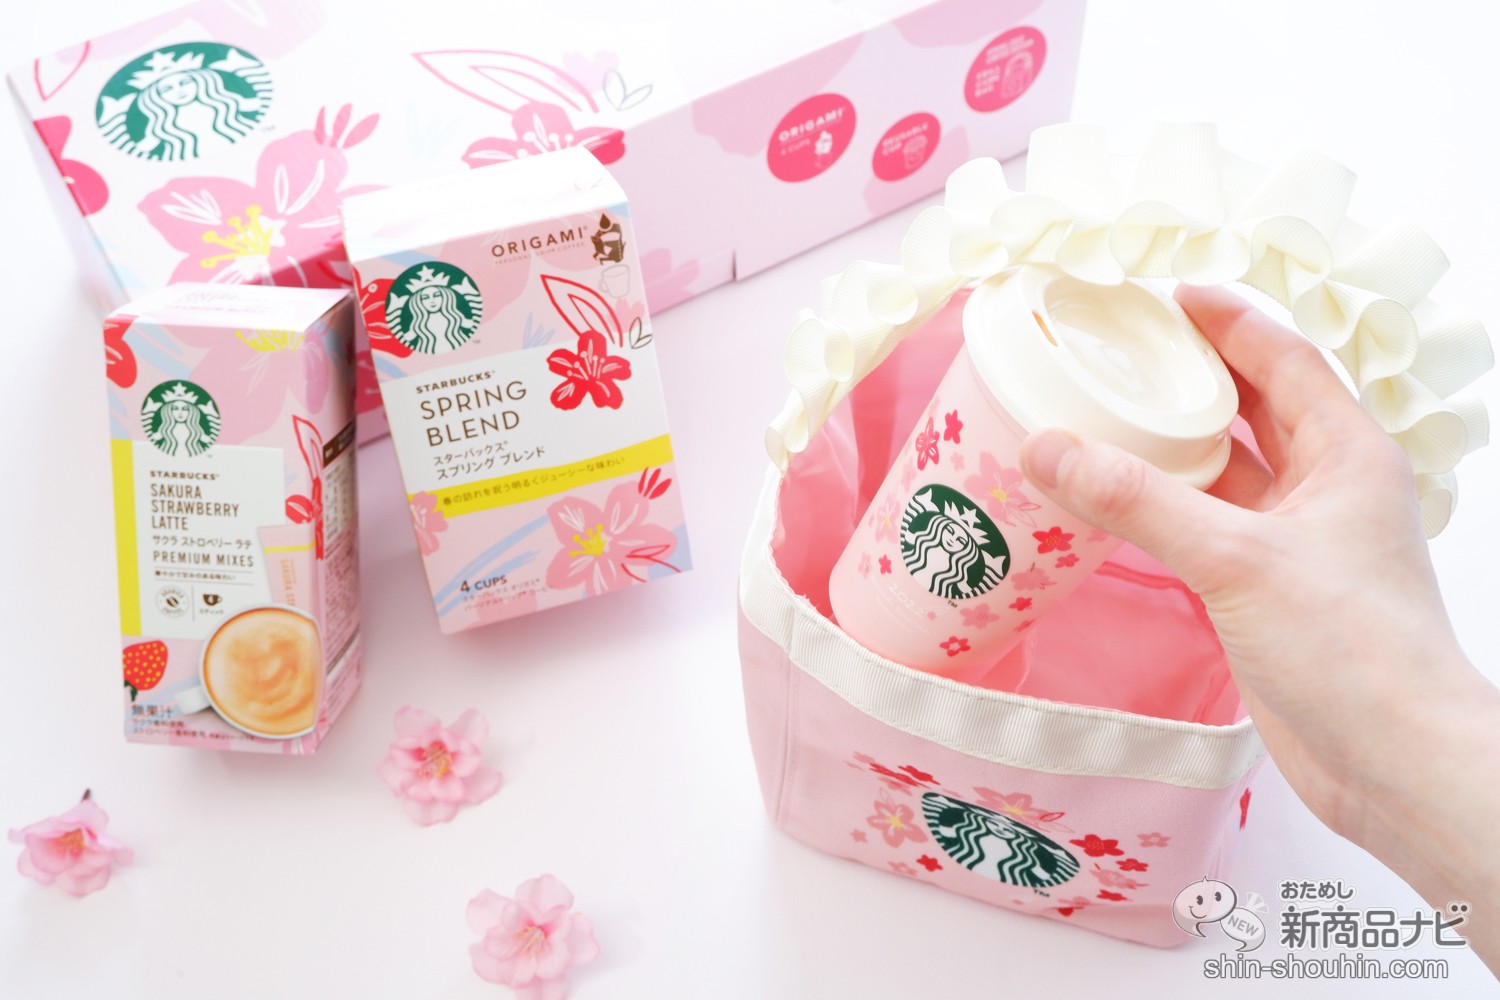 おためし新商品ナビ » Blog Archive » 桜モチーフの春季限定コーヒー